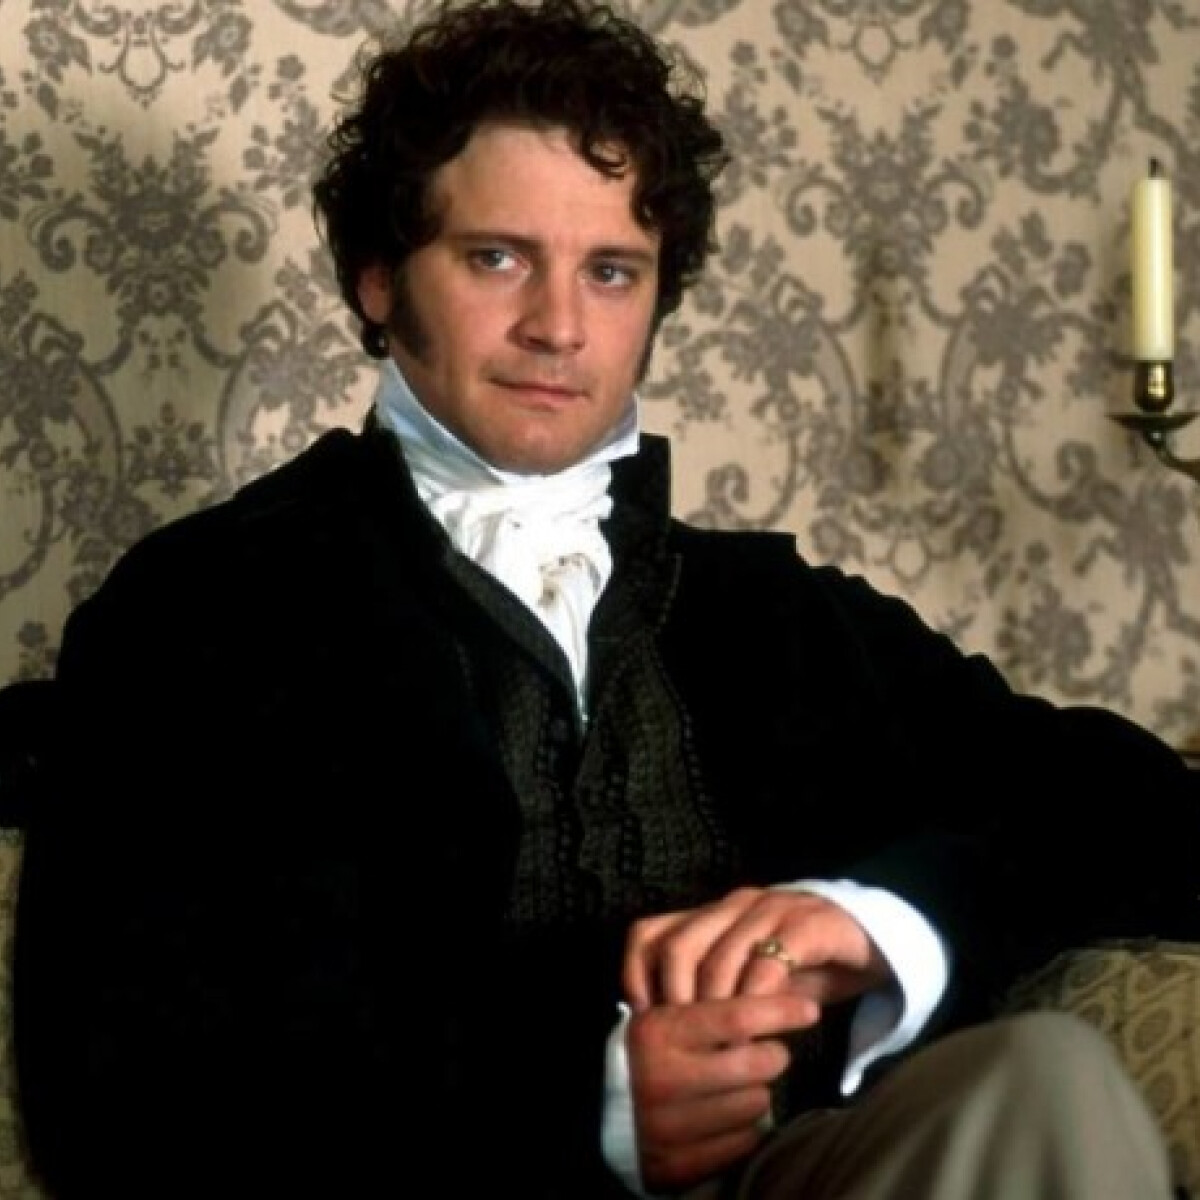 Jane Austen kézműves sörétől tuti, hogy még Mr. Darcy is jobb kedvre derült volna